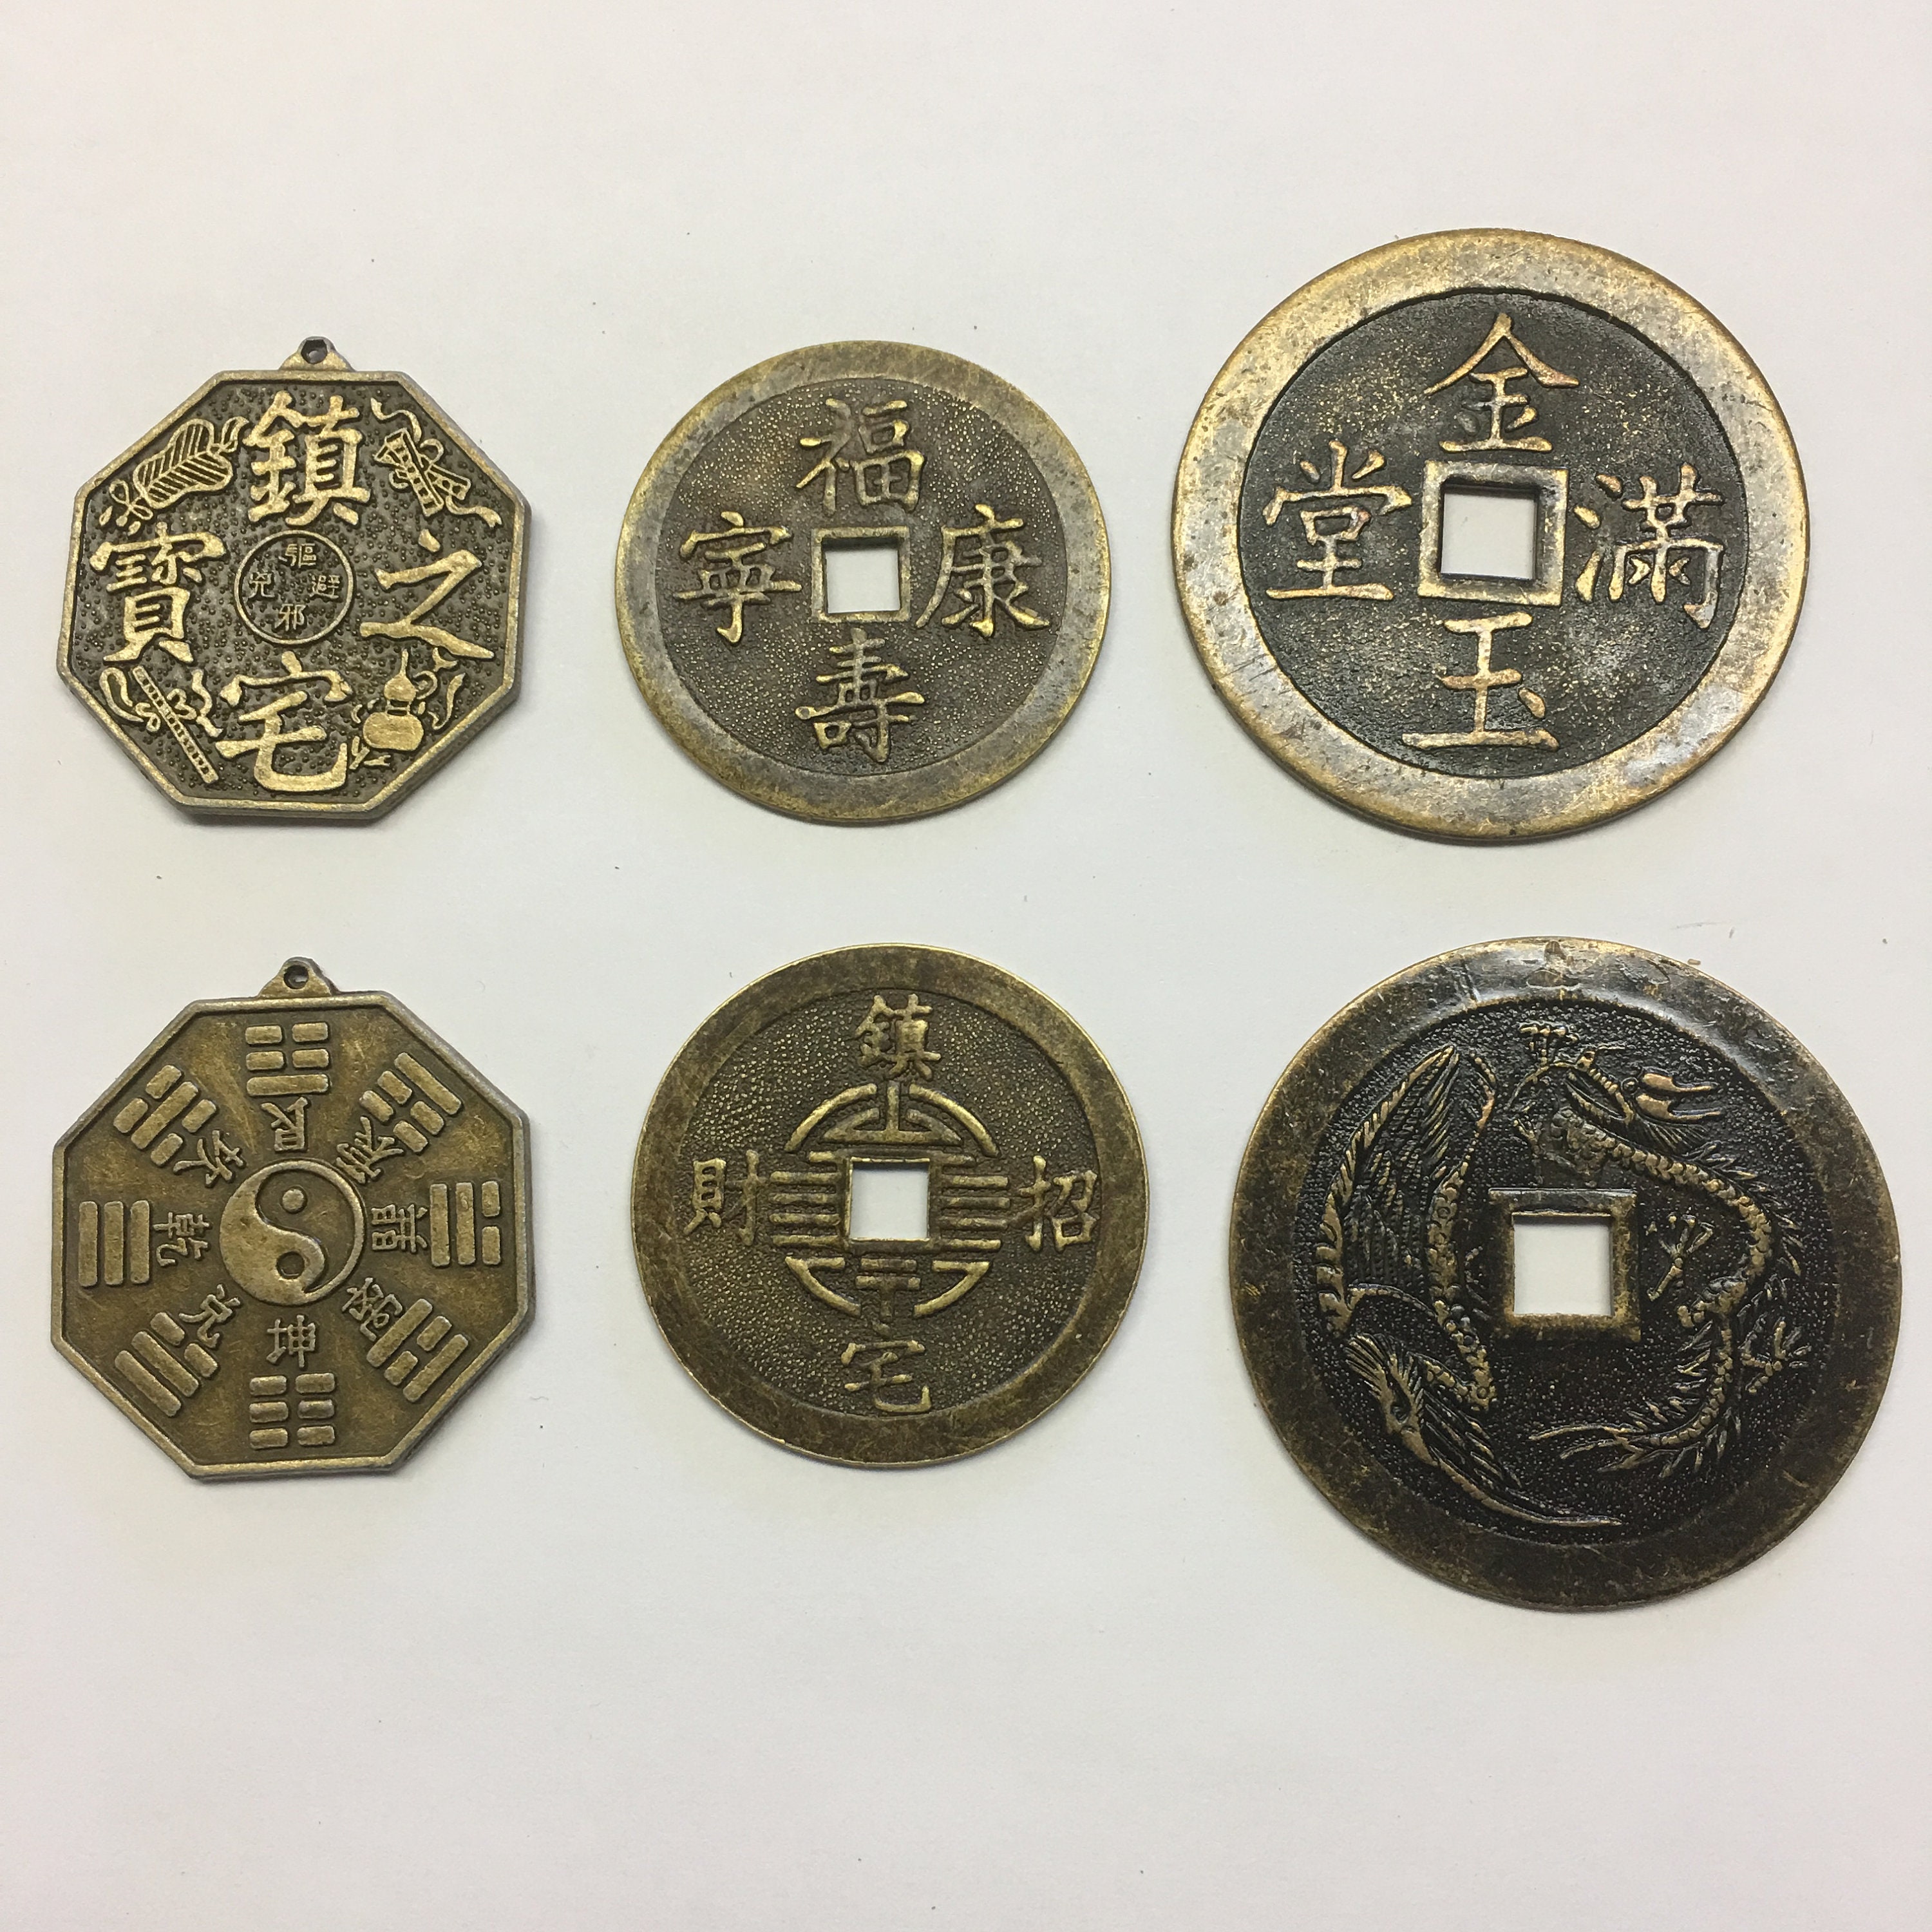 Las mejores ofertas en Monedas de Feng Shui